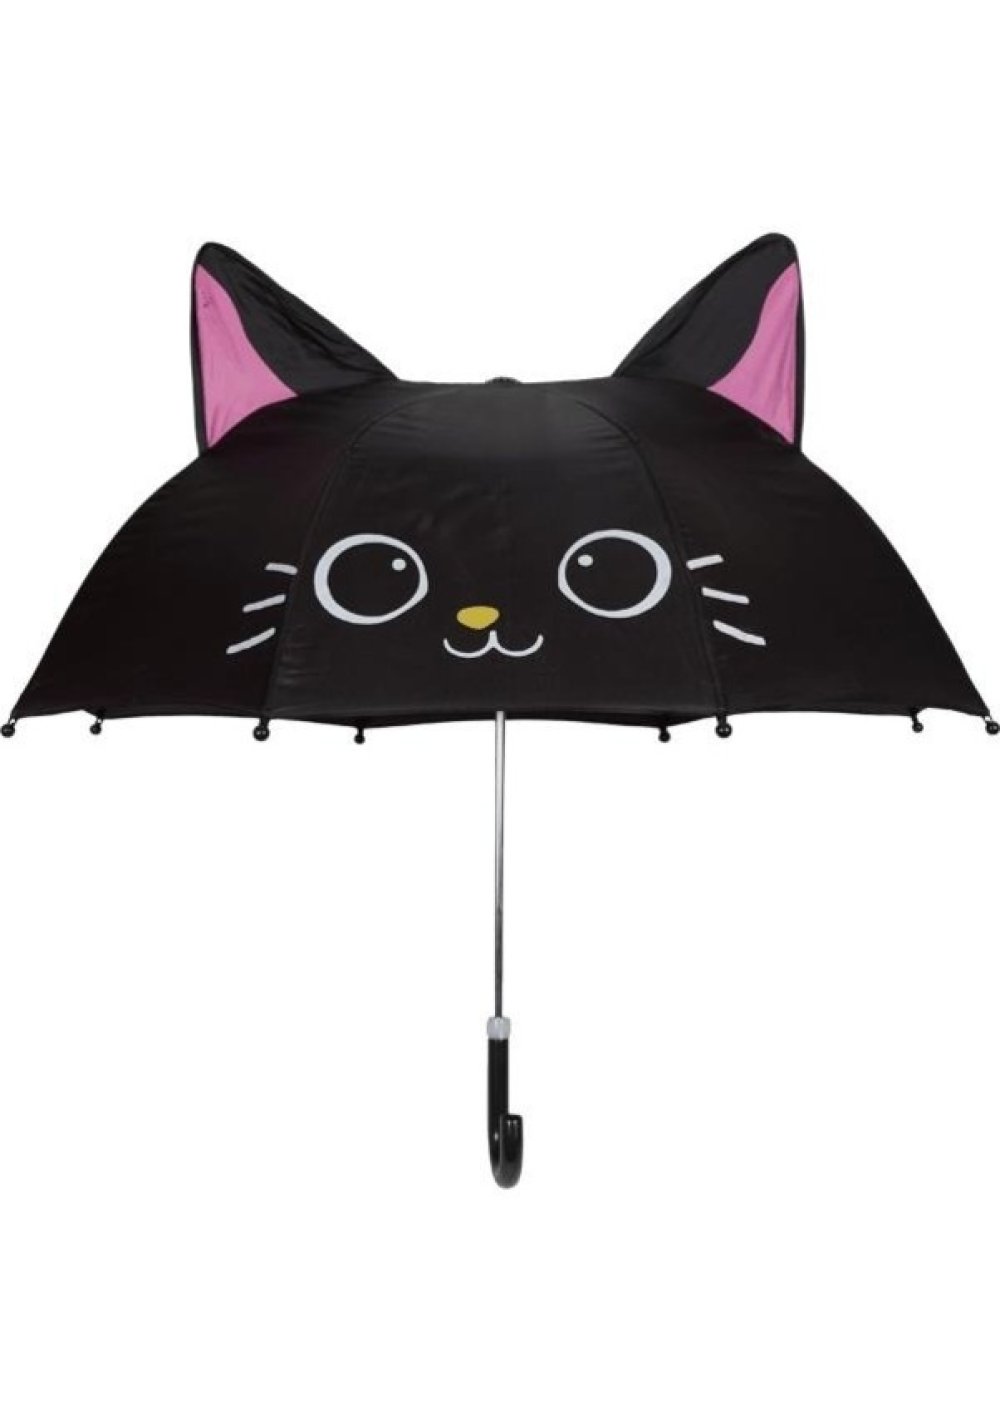 Kara Kedi Karakterli Figürlü Kız Erkek Çocuk Şemsiye Hediyelik Ufak Boy Üç Boyutlu